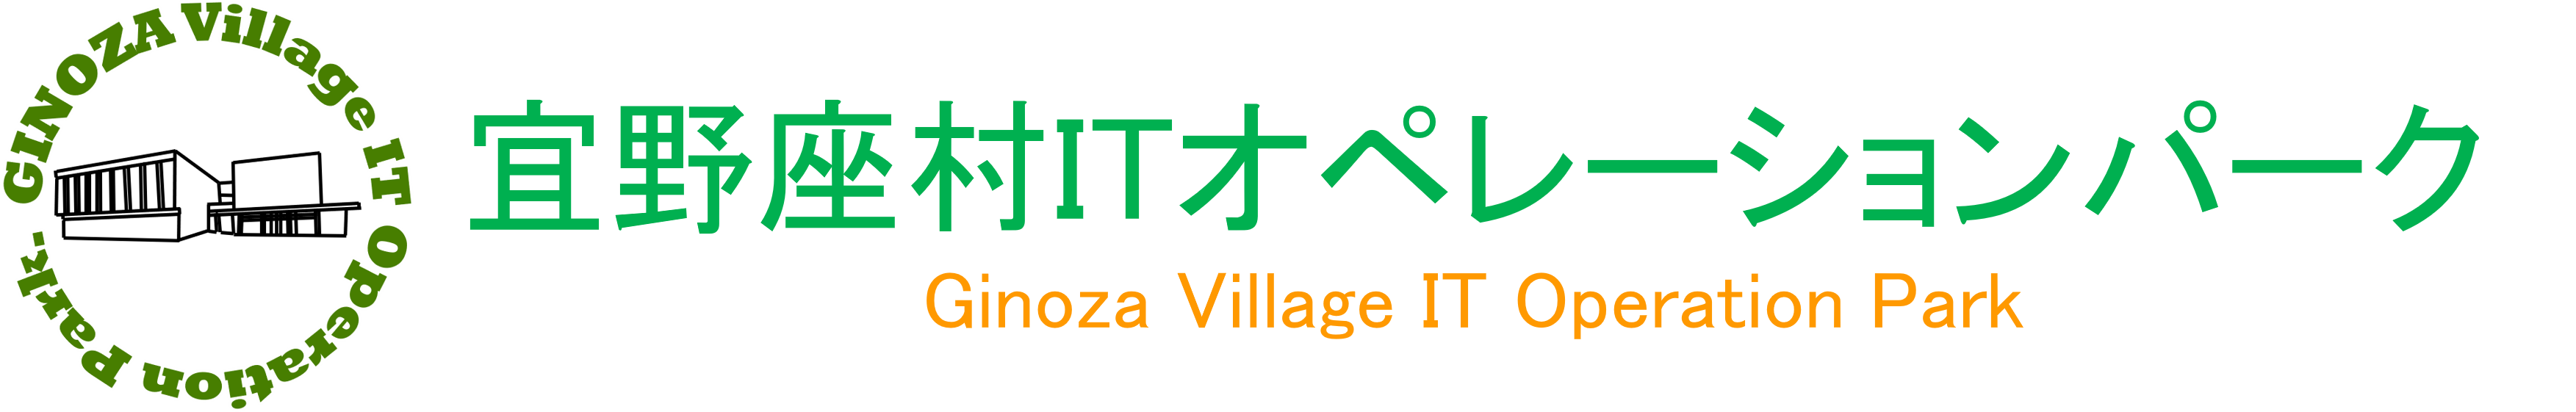 宜野座村ITオペレーションパーク